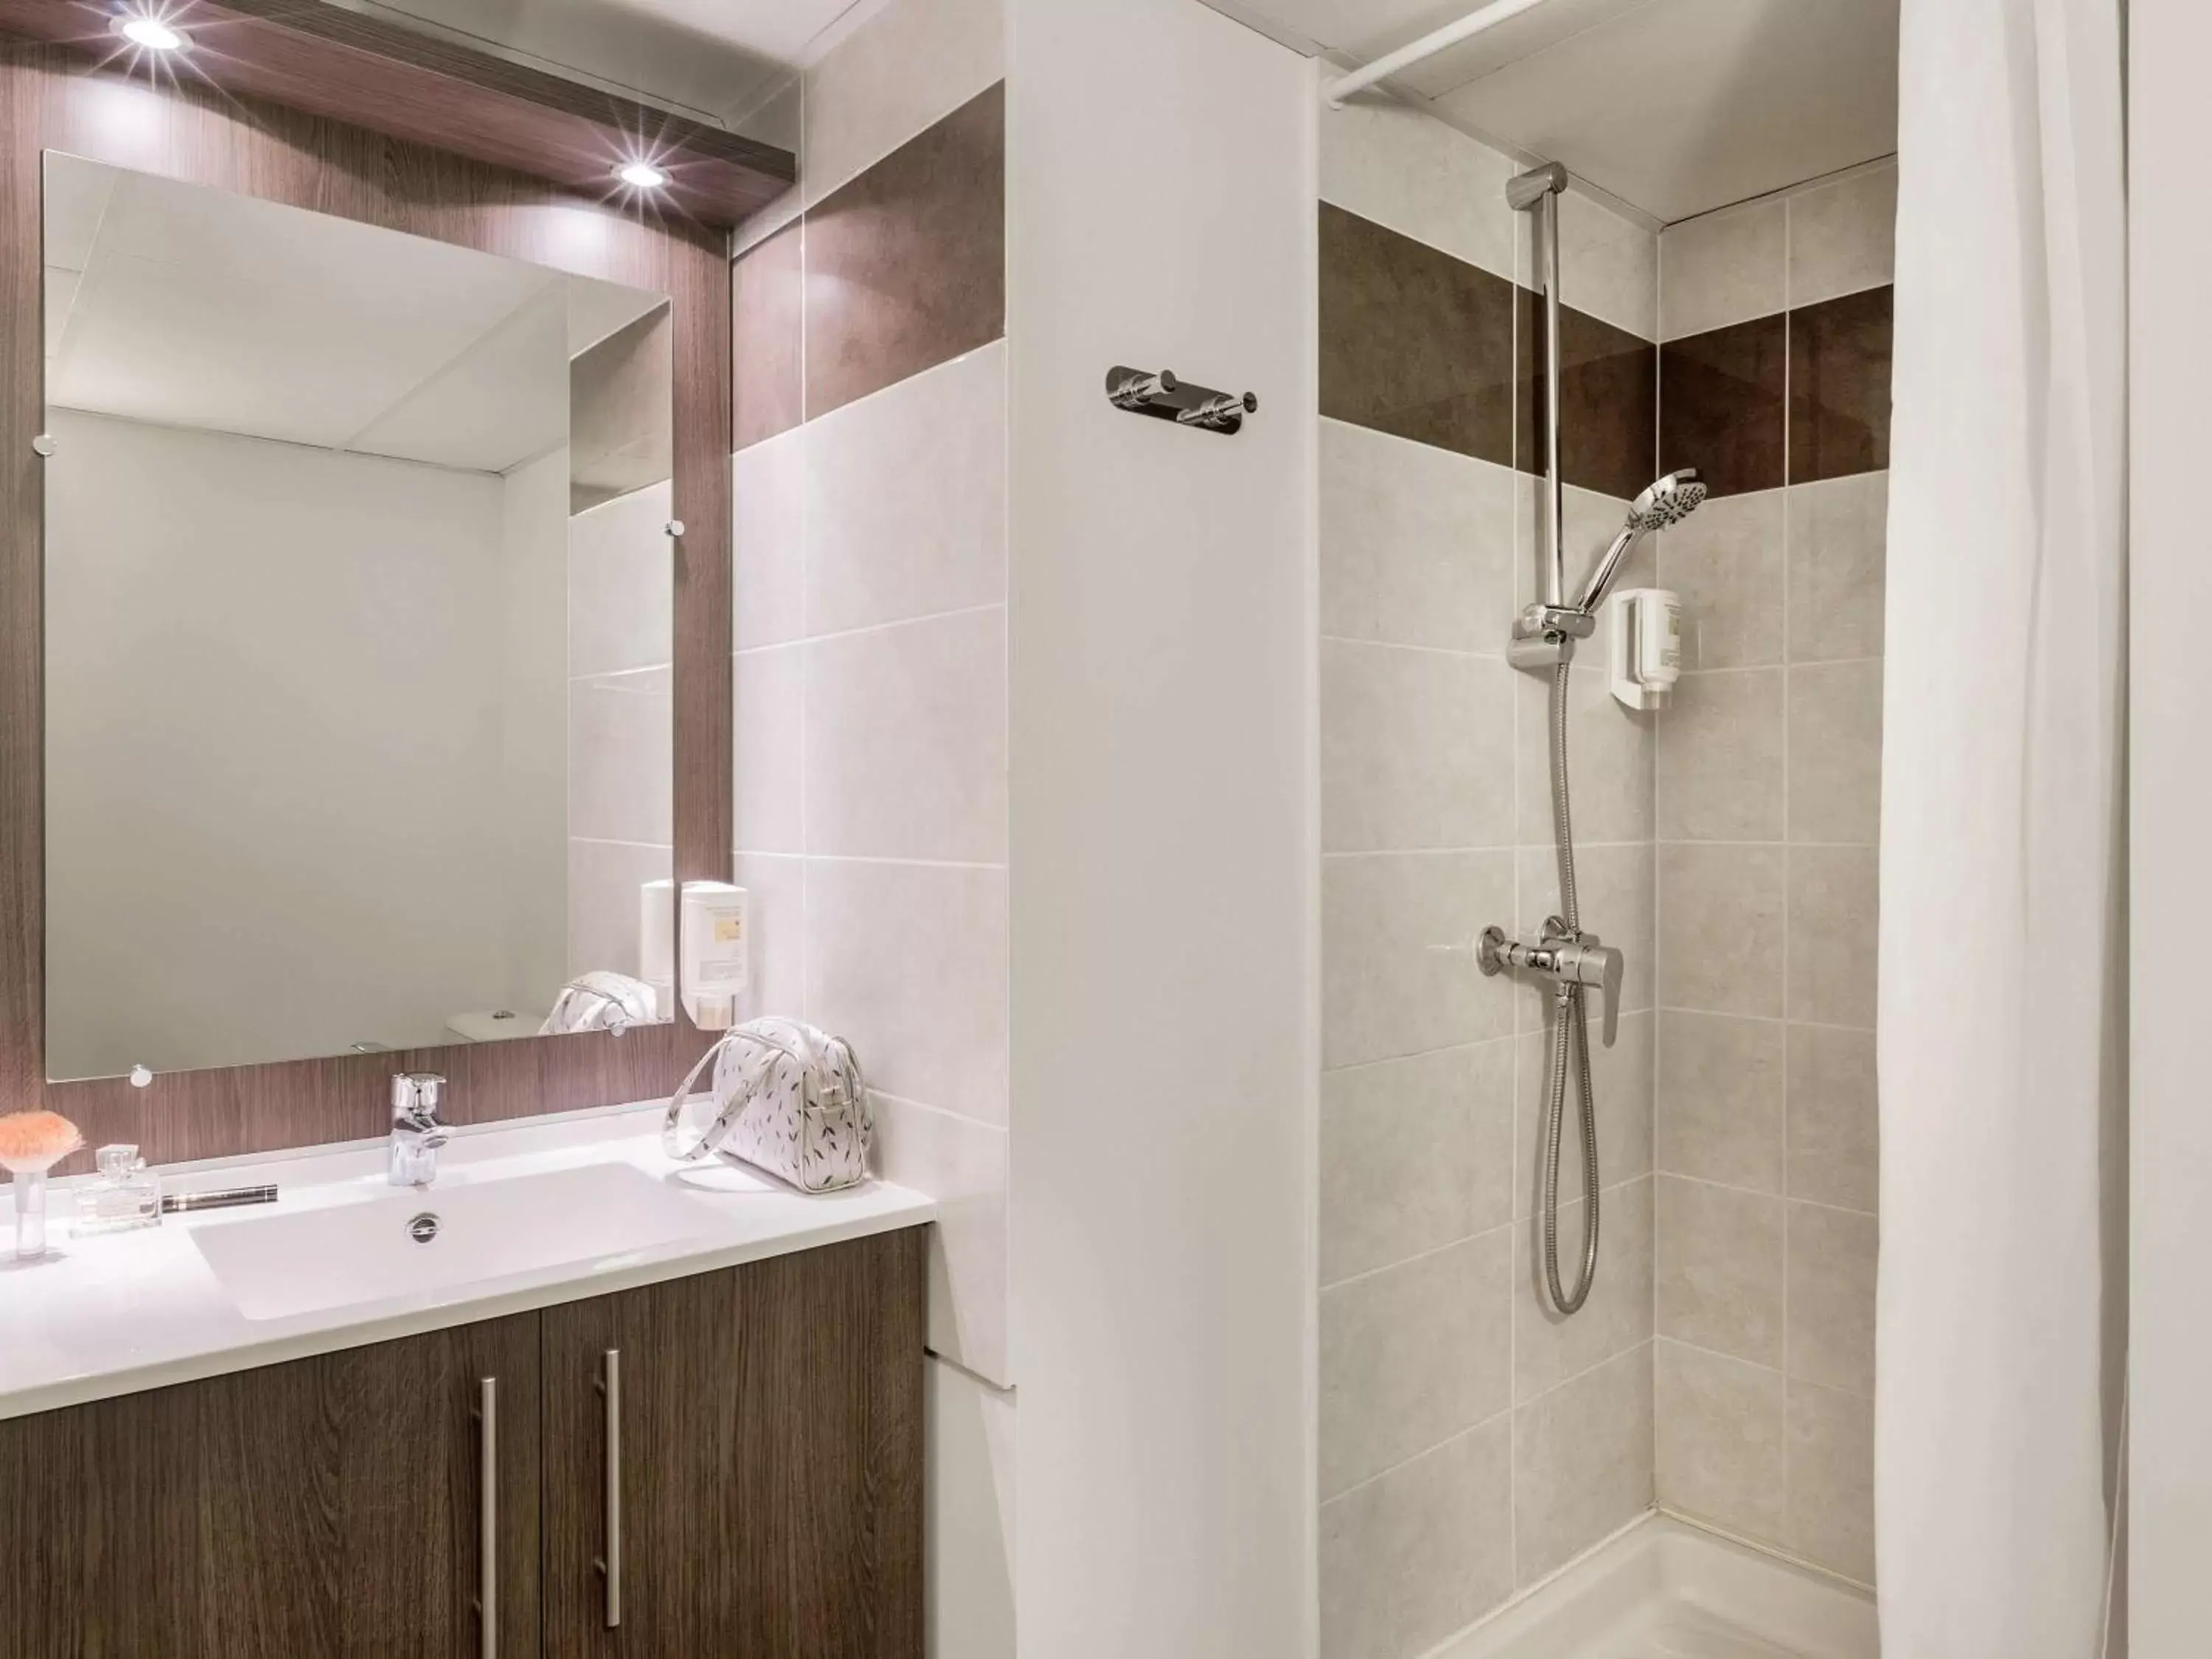 Photo of the whole room, Bathroom in Aparthotel Adagio Access Nantes Viarme